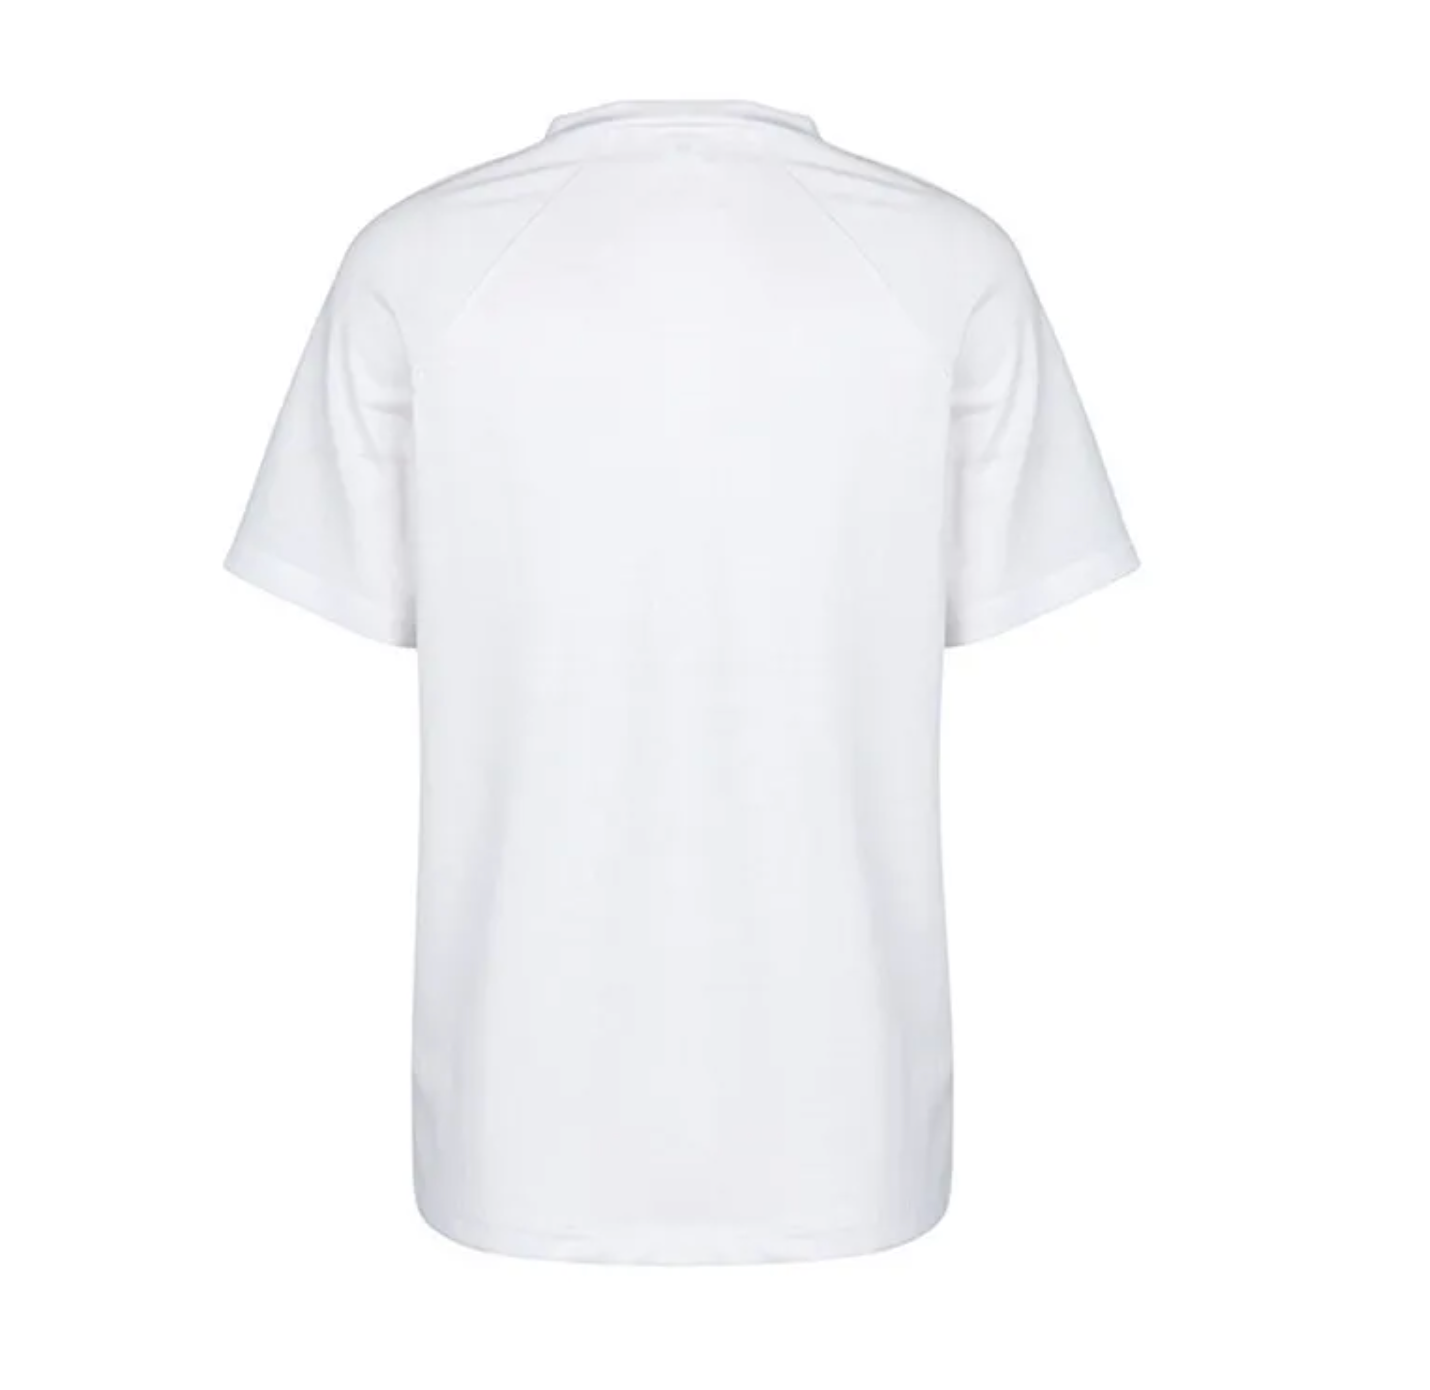 Kucho White / Black Knot T-Shirt